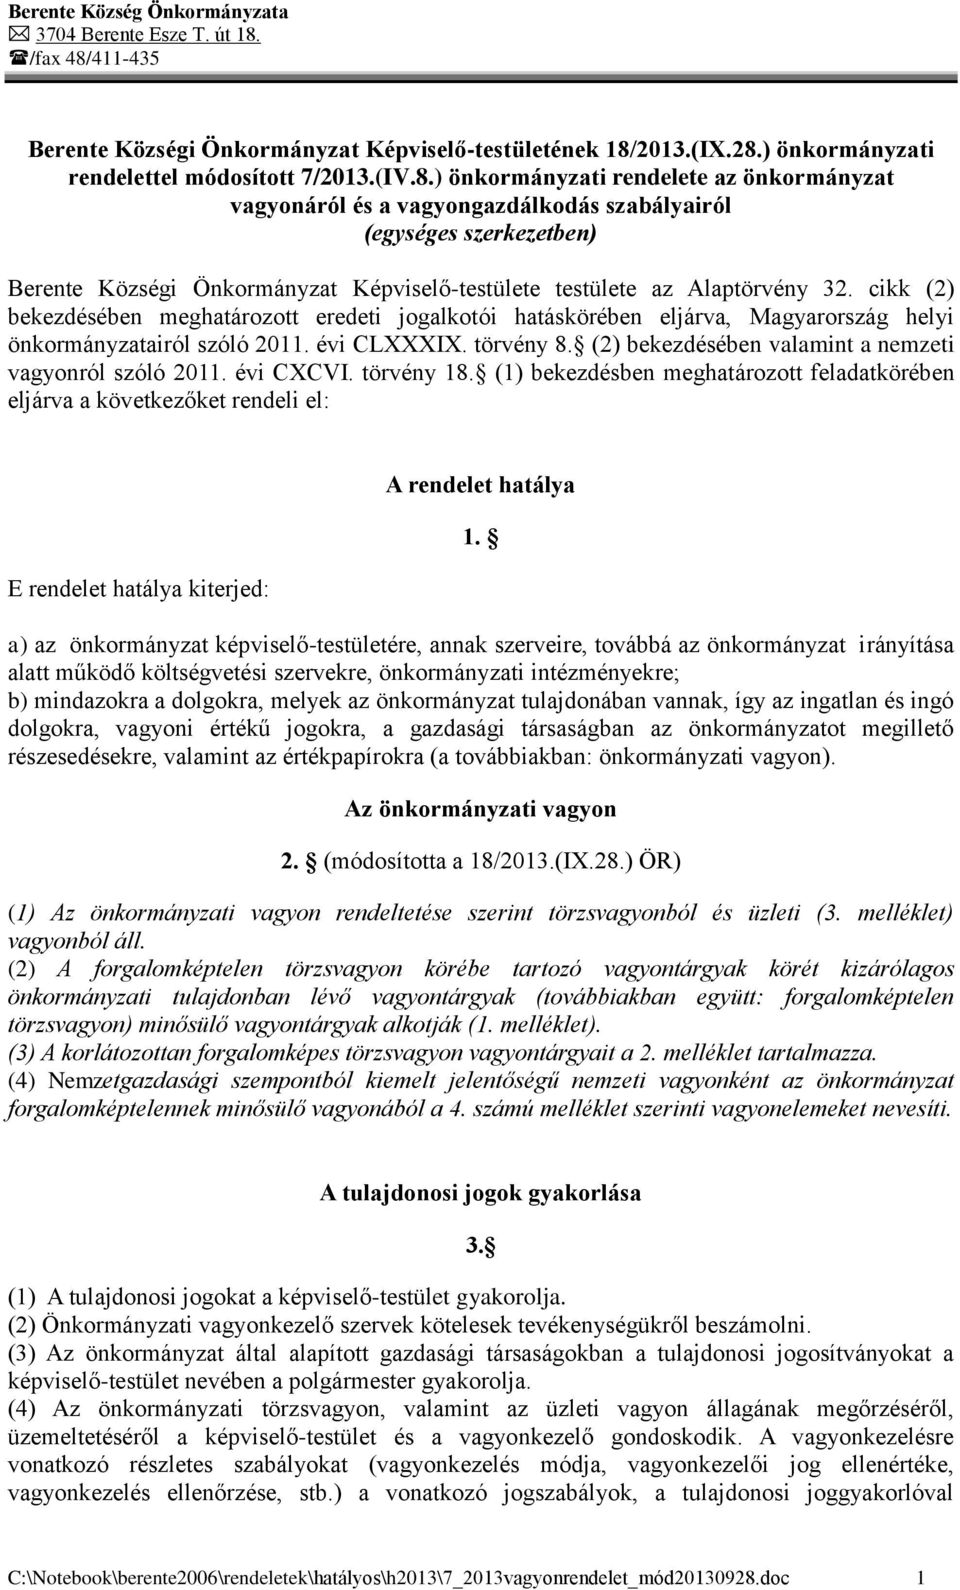 cikk (2) bekezdésében meghatározott eredeti jogalkotói hatáskörében eljárva, Magyarország helyi önkormányzatairól szóló 2011. évi CLXXXIX. törvény 8.